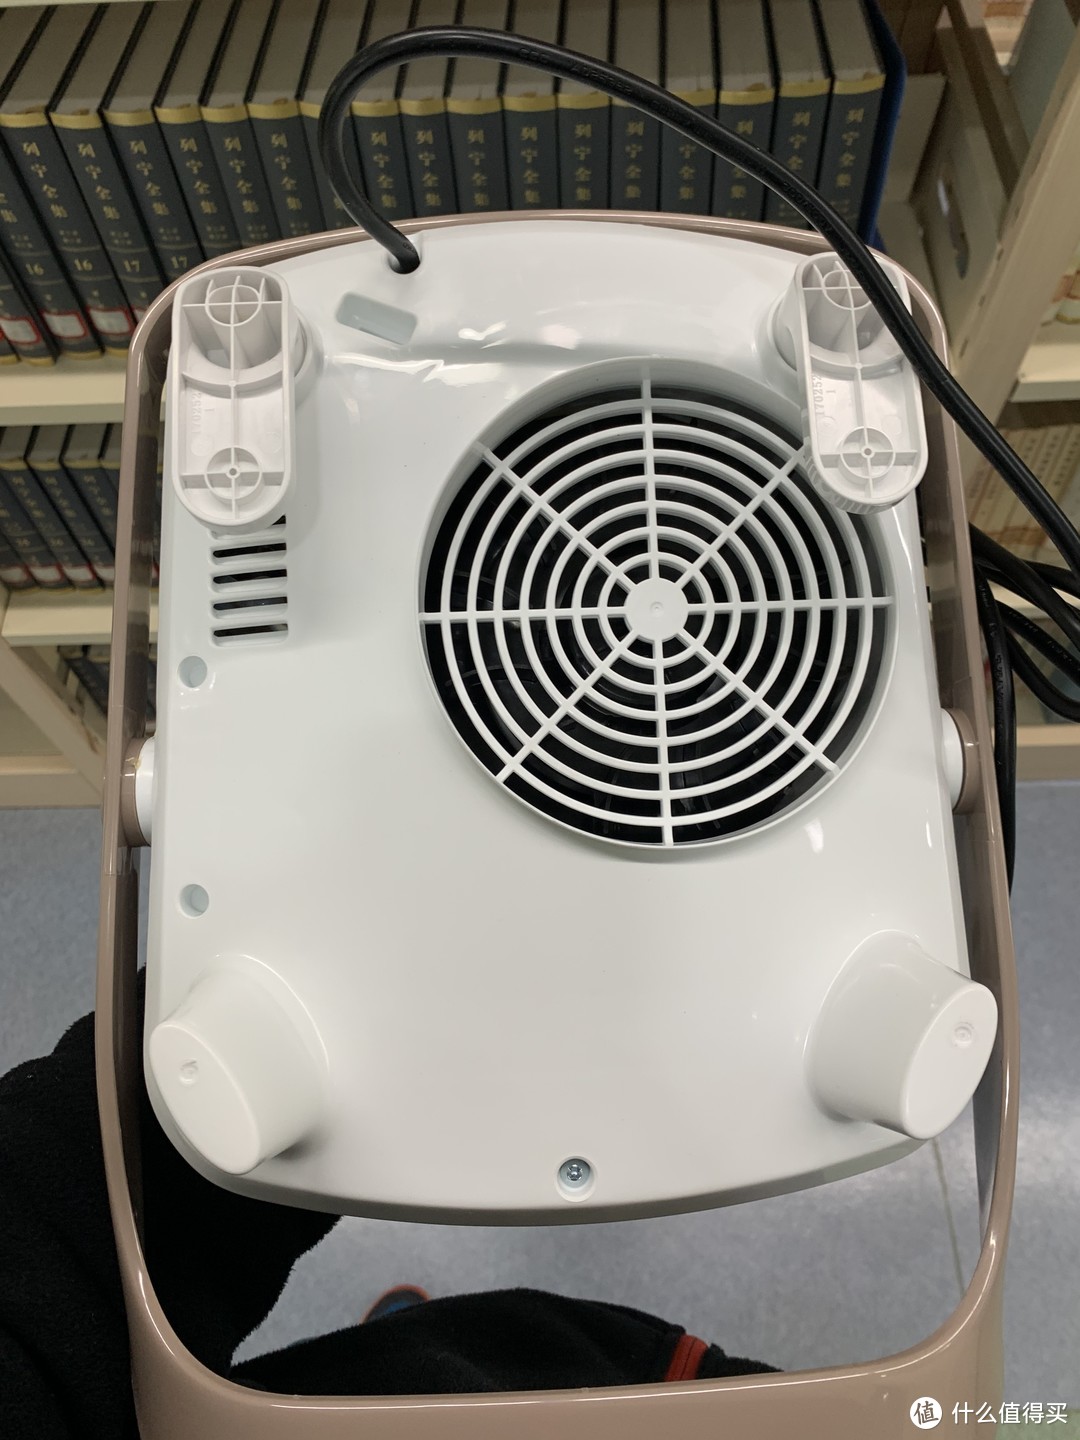 图书馆猿の艾美特 (Airmate) HP20152-W 多功能暖风机 简单晒